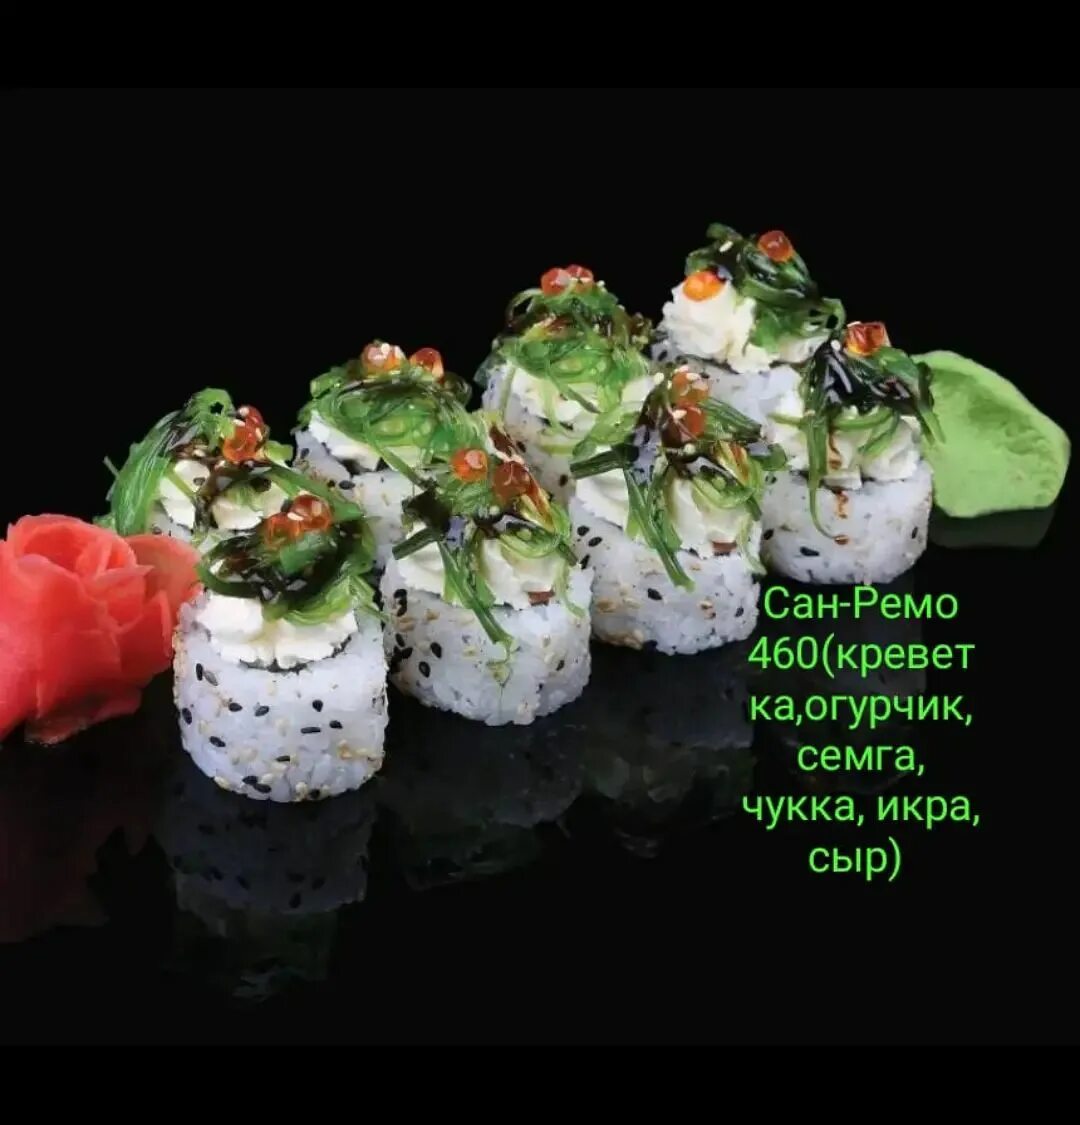 Заказать суши с доставкой мафия фото 22